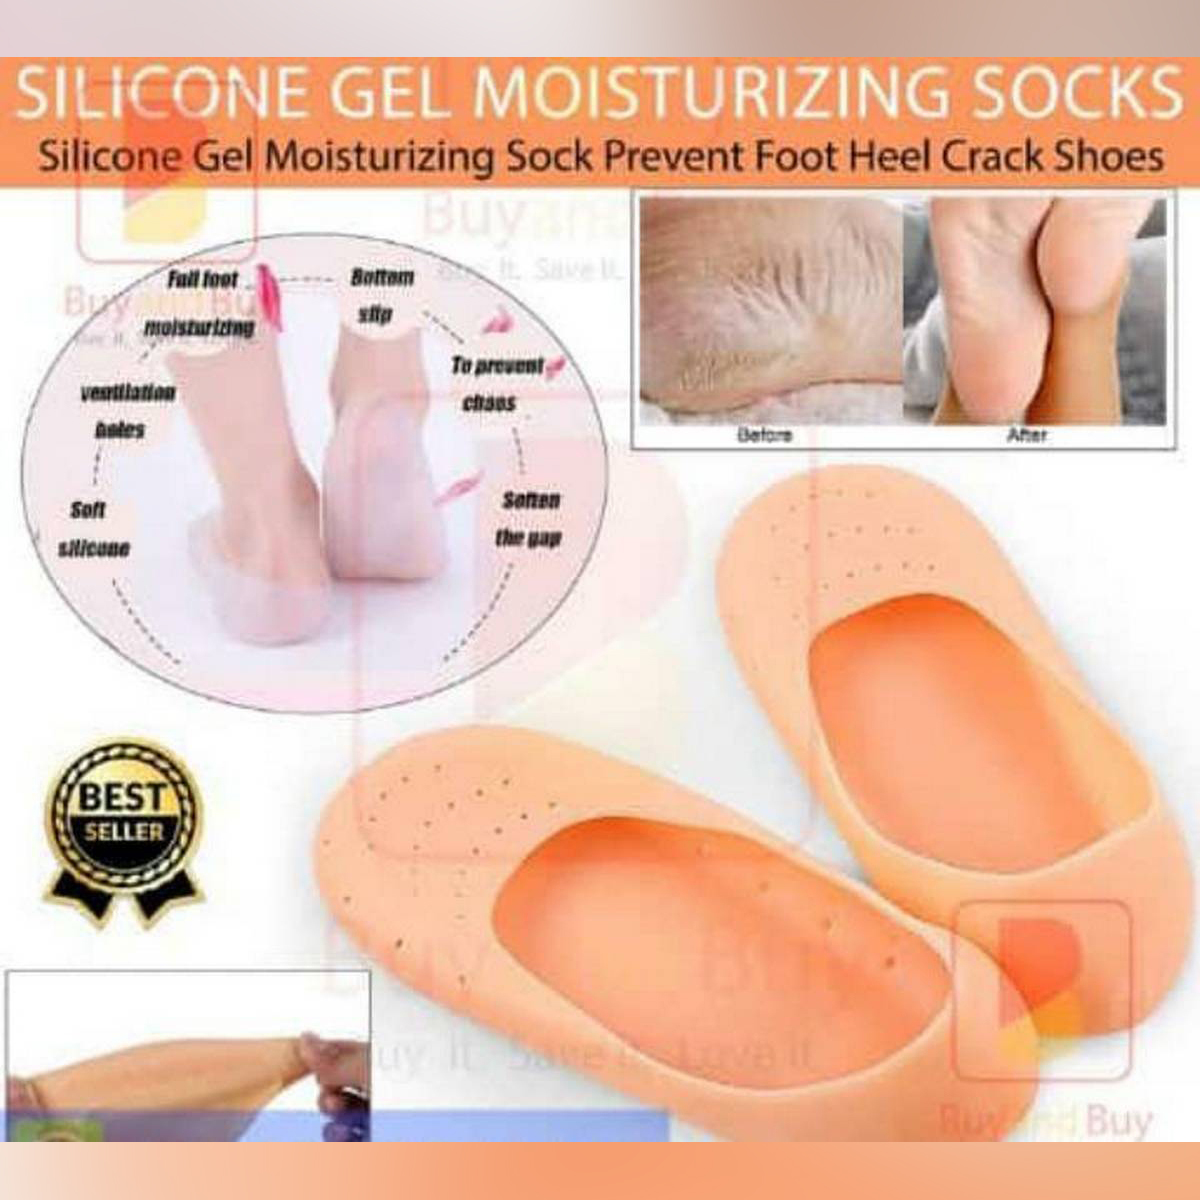 Silicone moisturizing socks